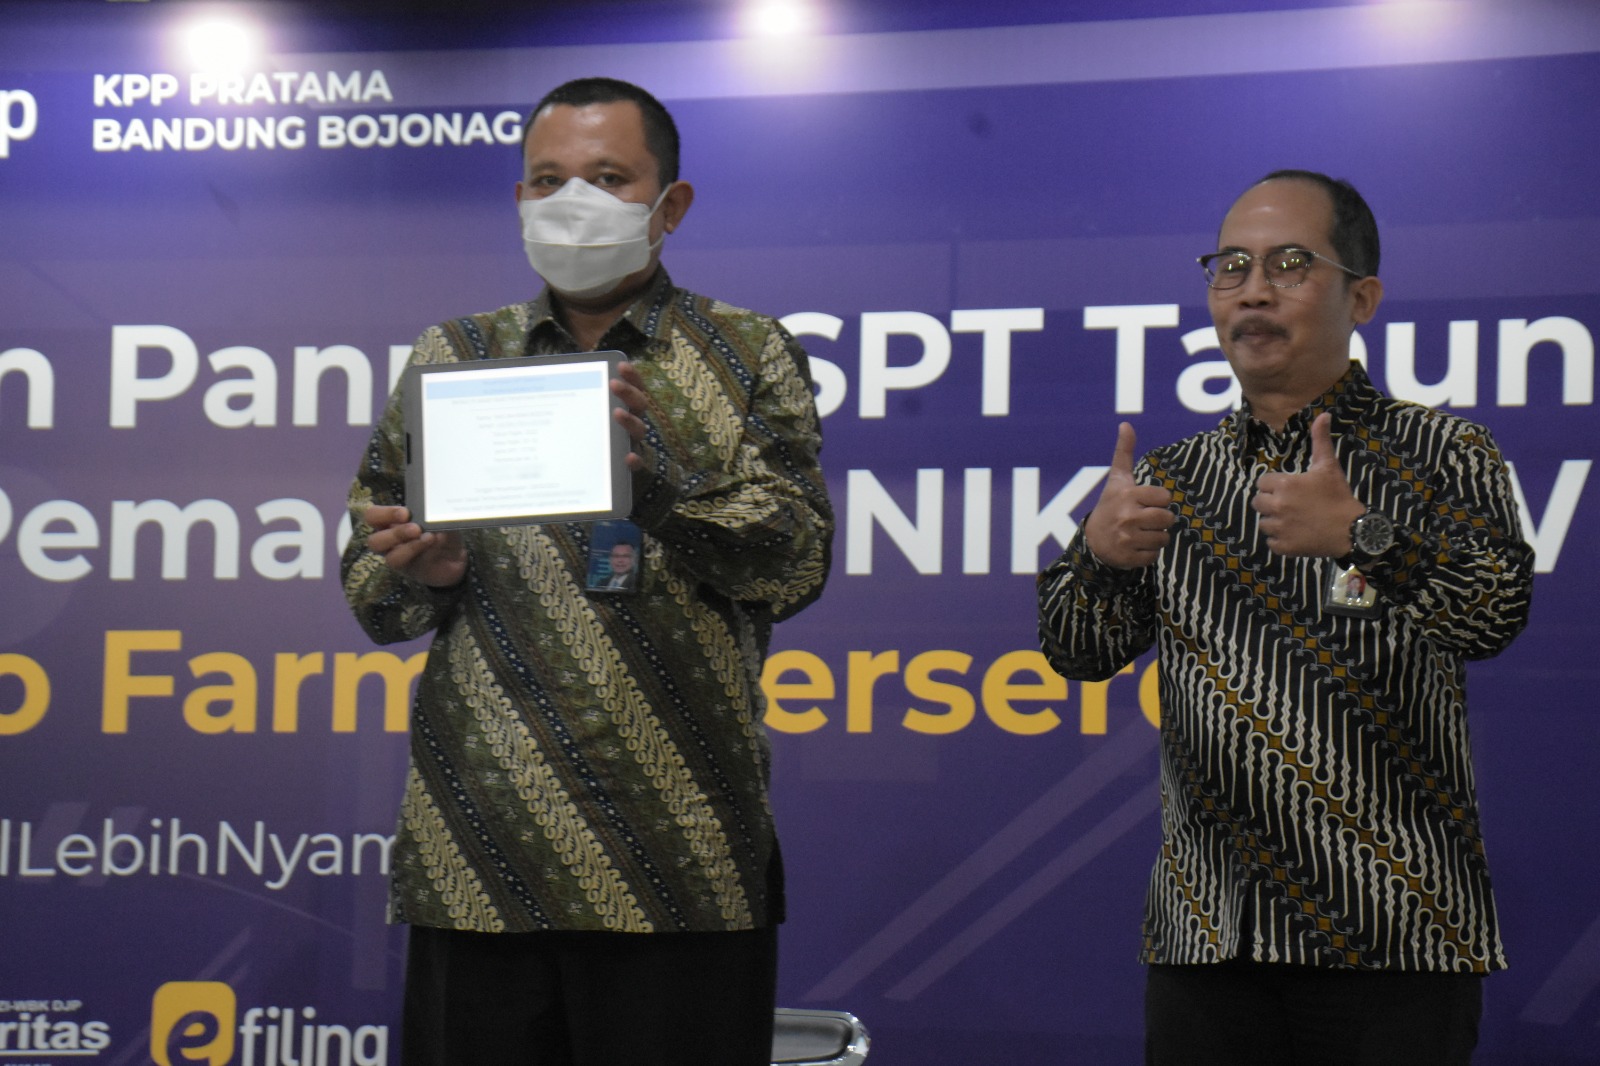 PT Bio Farma Bandung Menjadi Panutan Pelaporan SPT Tahunan